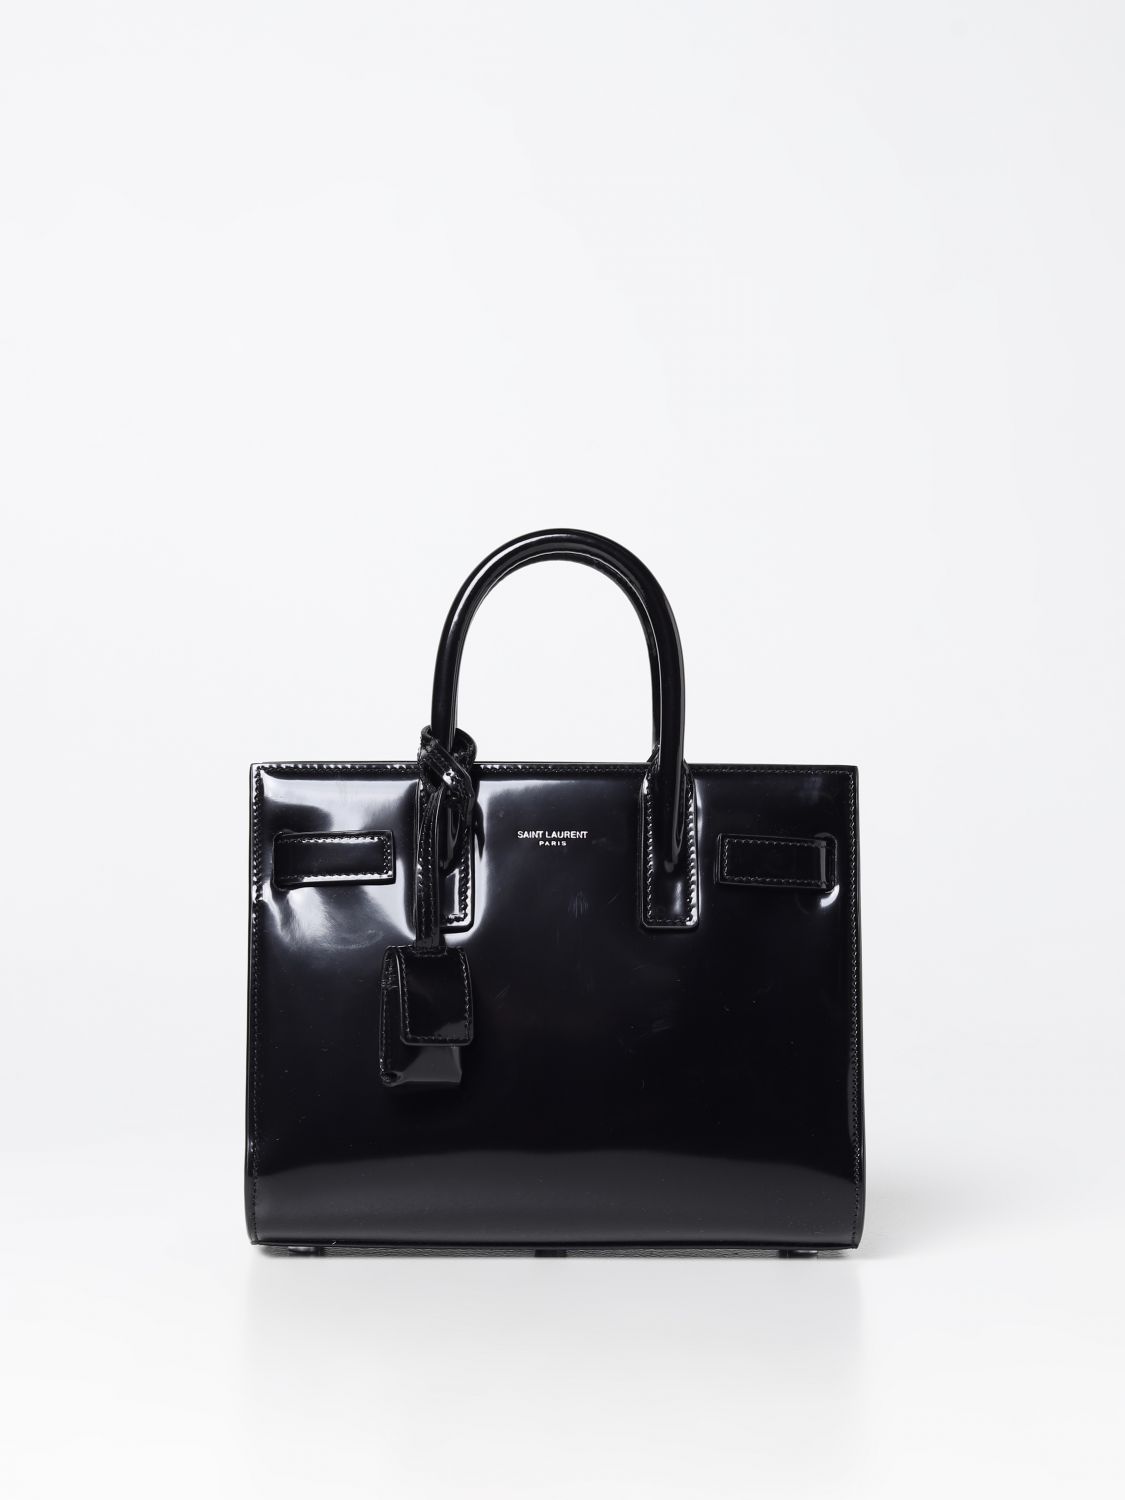 Saint Laurent Sac De Jour Nano Patent-leather Handbag - Black